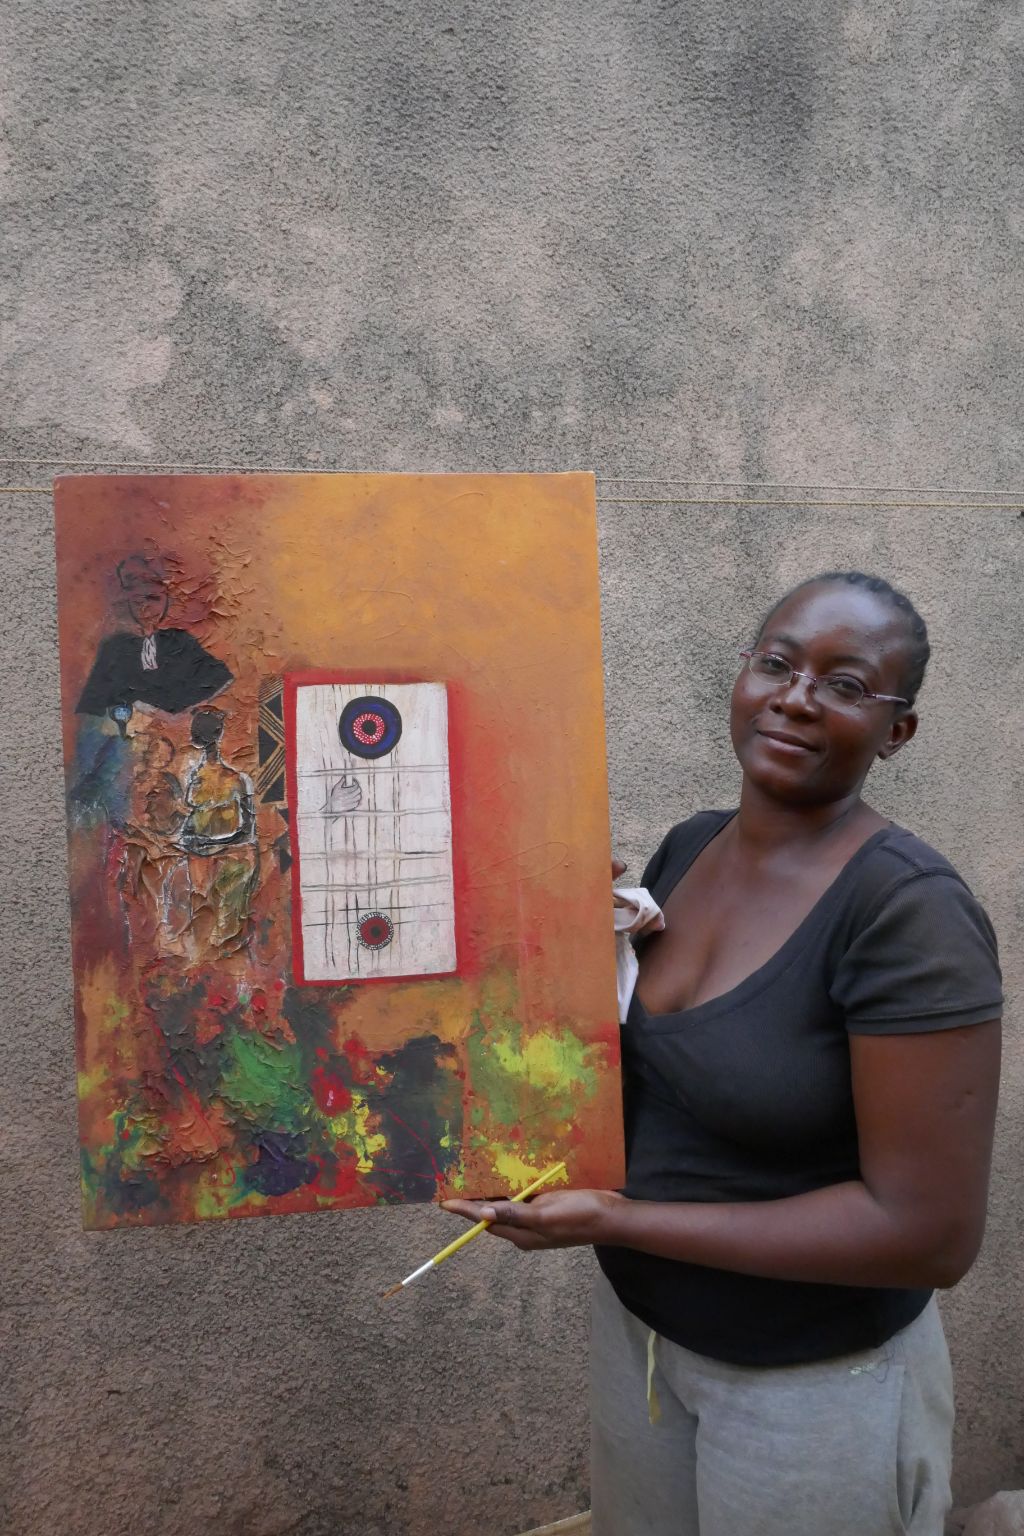 Das Foto zeigt rechts die Künstlerin Safi. Sie steht vor einer Mauer und hält eines ihrer Bilder in die Höhe. Auf orangem Hintergrund ist eine Gefängniszelle zu sehen mit einer Hand an den Gitterstäben. Links davon verschwommen ein Richter, darunter eine Frau und viele Farbkleckse.